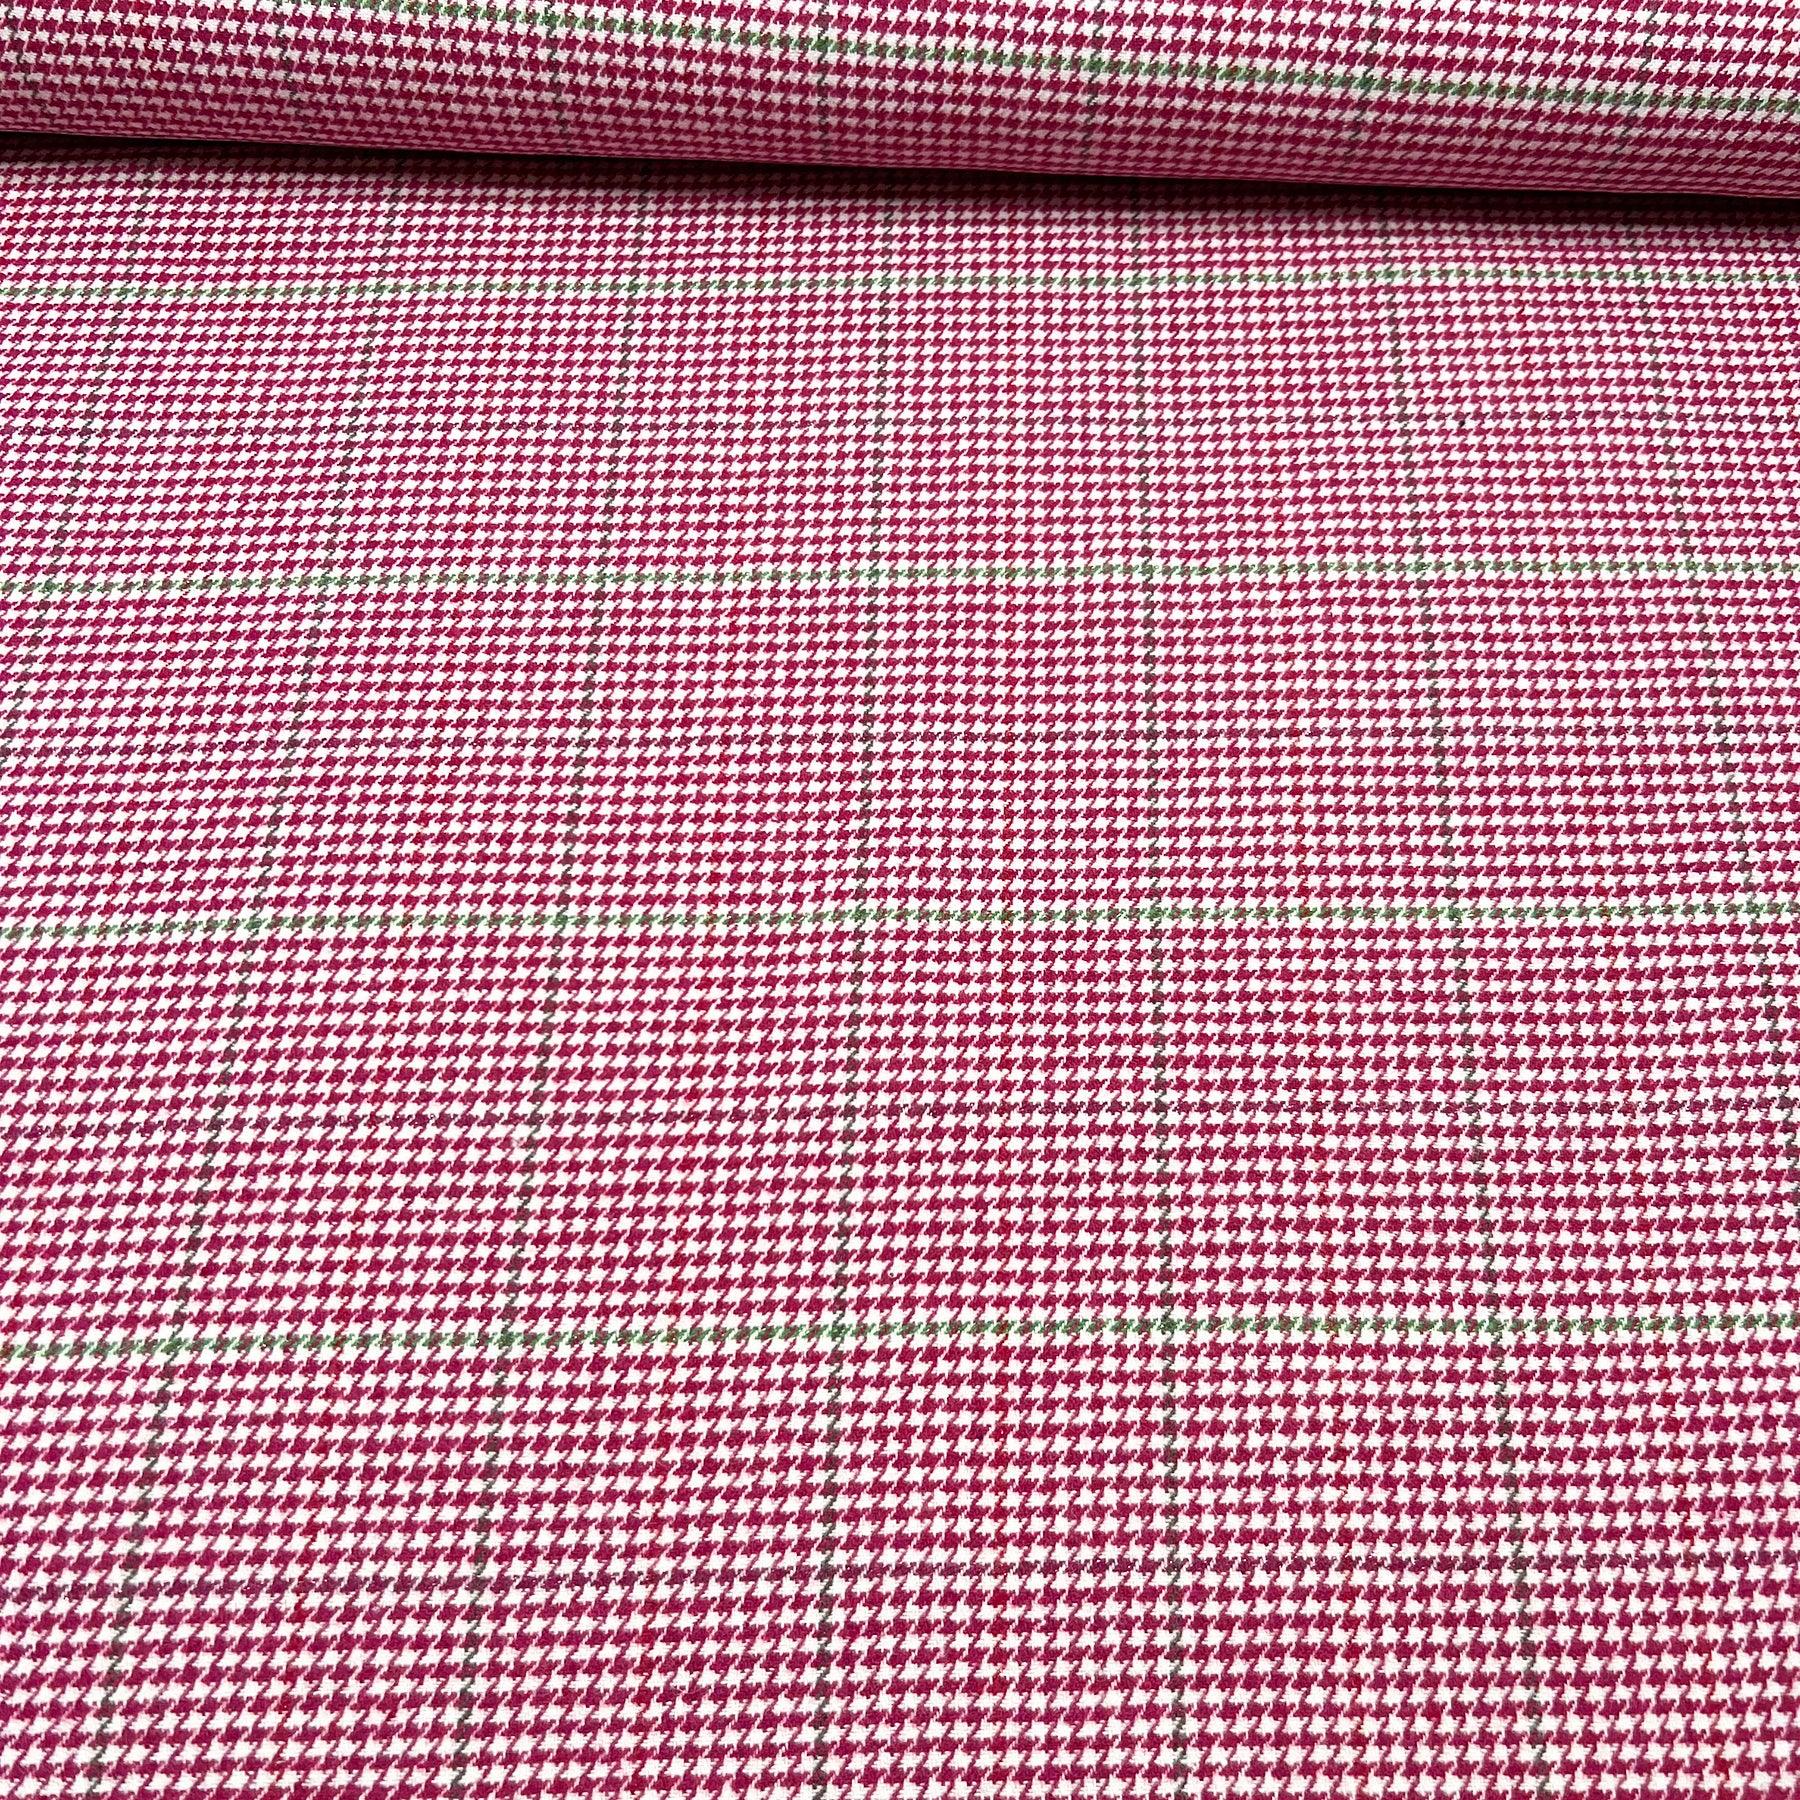 Tissu lainage pied de poule rose